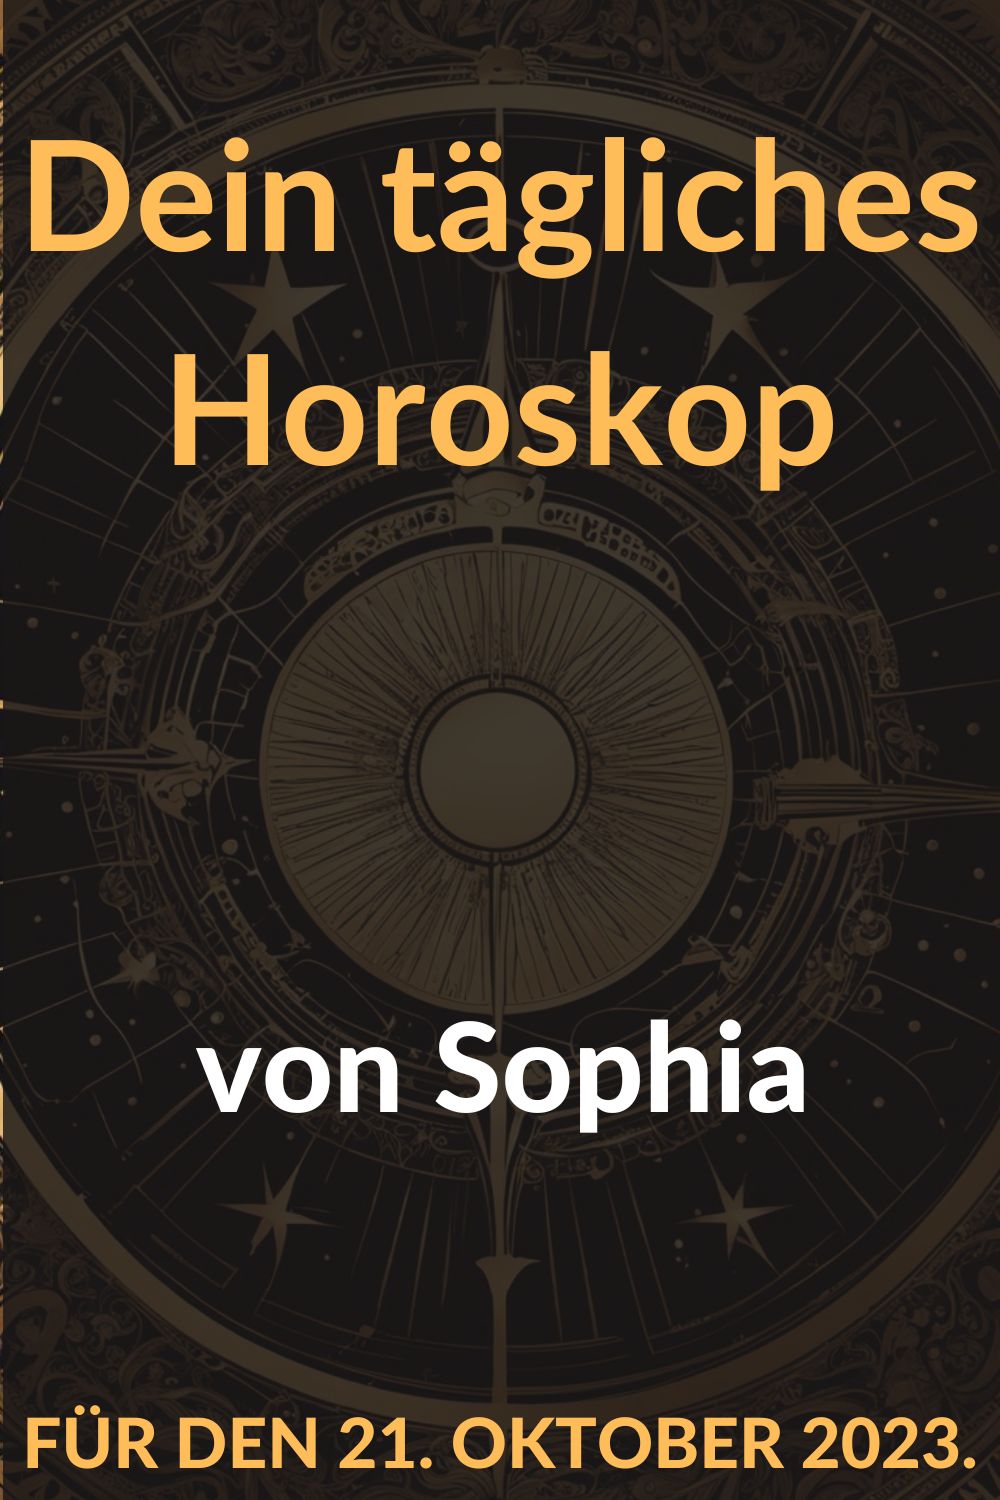  Dein-taegliches-Horoskop-von-Sophia-fuer-den-21.-Oktober-2023